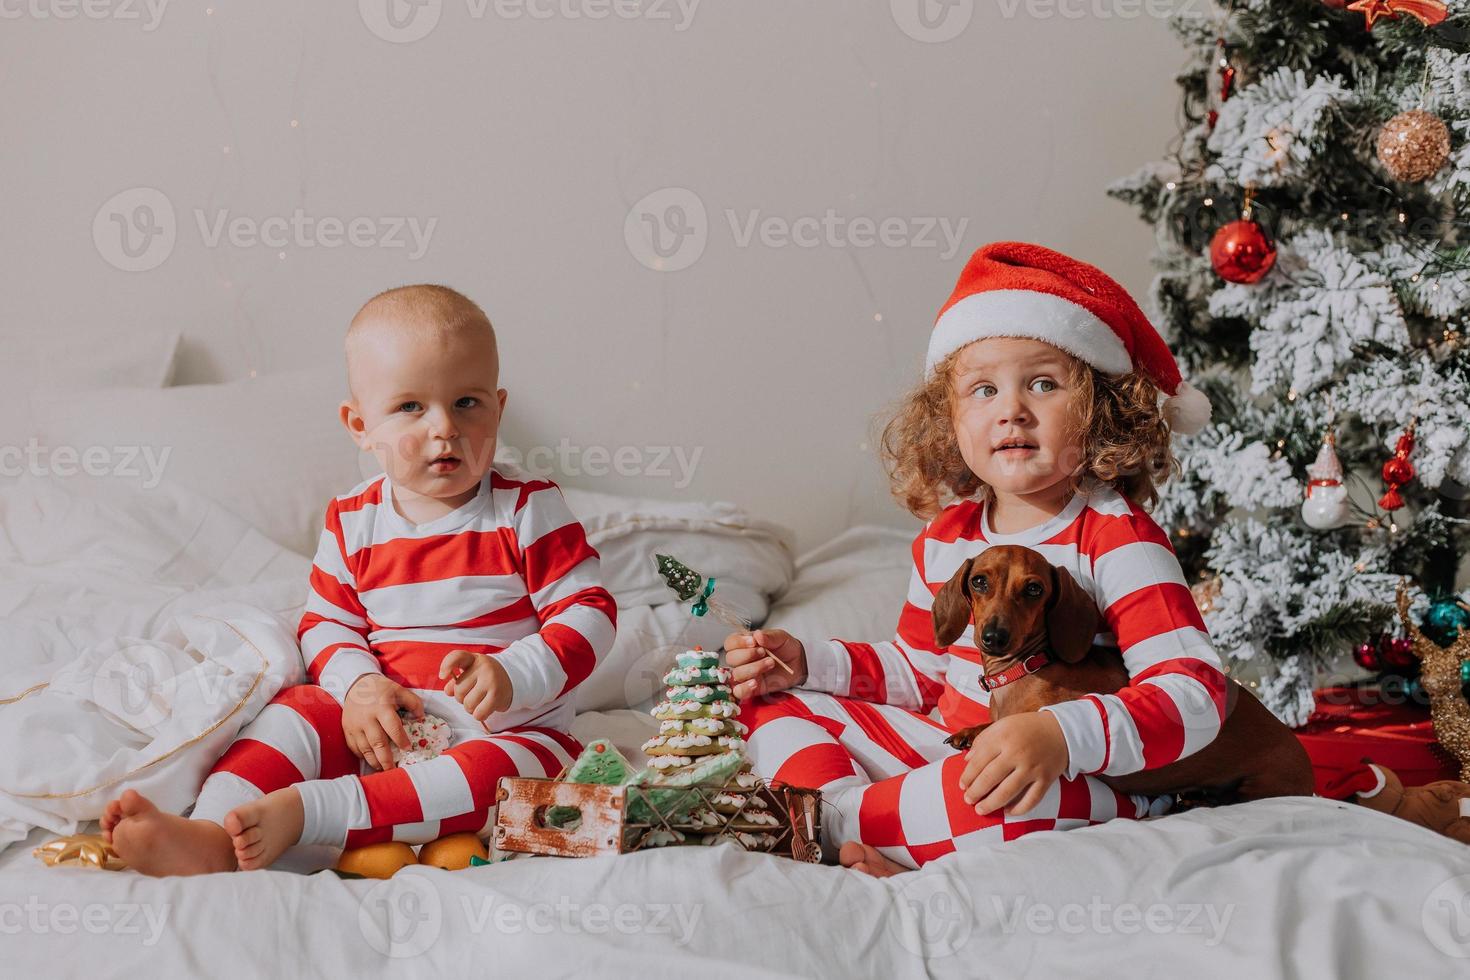 los niños en pijama rojo y blanco sentados en la cama comparten dulces navideños entre ellos y con su perro. hermano y hermana, niño y niña celebran el año nuevo. espacio para texto. foto de alta calidad